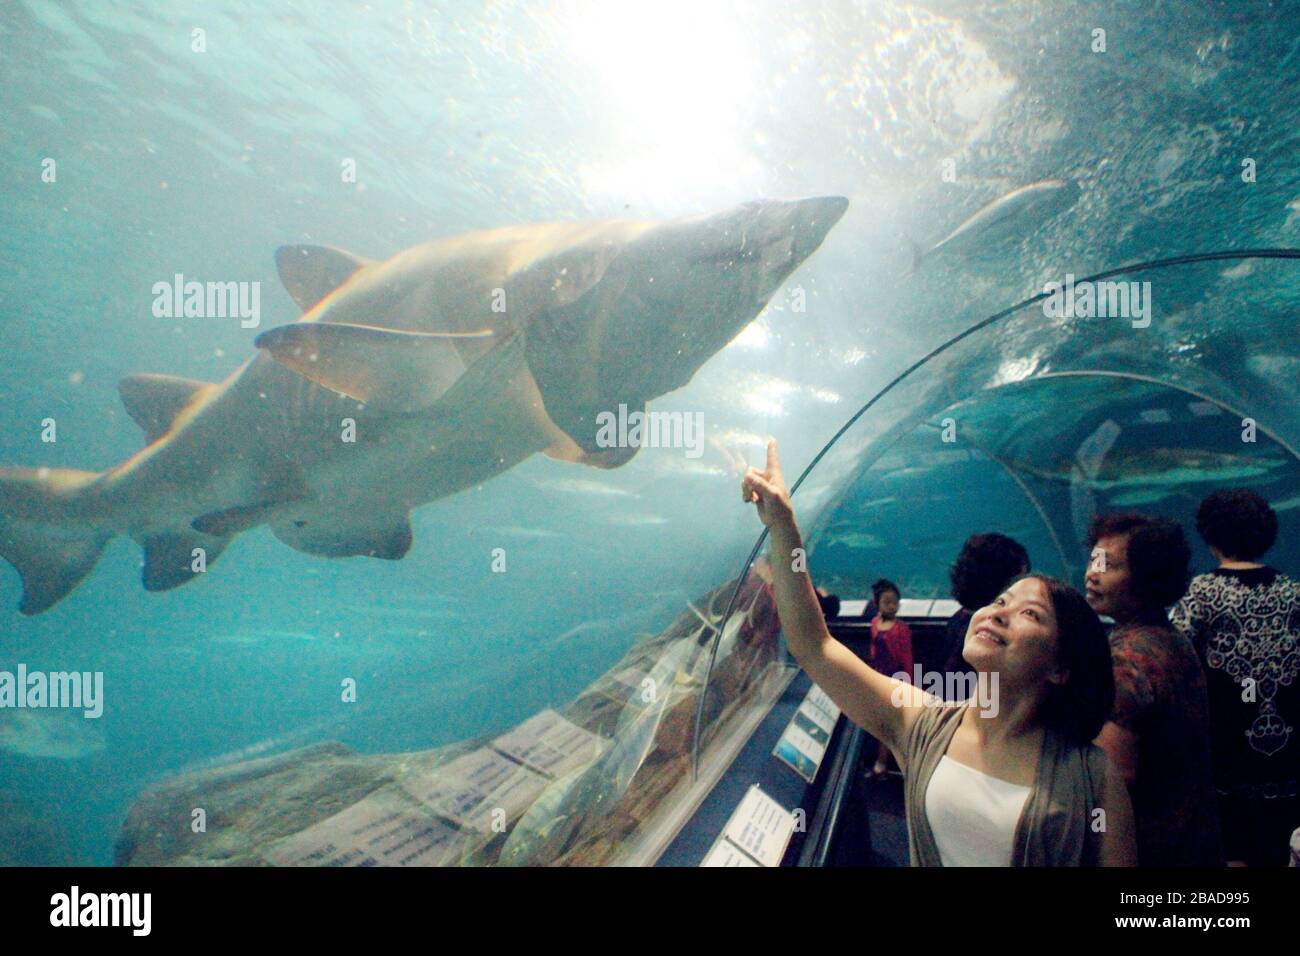 Shanghai, Chine. 27 mars 2020. L'aquarium marin de Shanghai est l'un des plus grands aquarium artificiel au monde, avec une zone d'exposition biologique et écologique unique dans le bassin fluvial de Yangtze en Chine. Crédit: SIPA Asia/ZUMA Wire/Alay Live News Banque D'Images